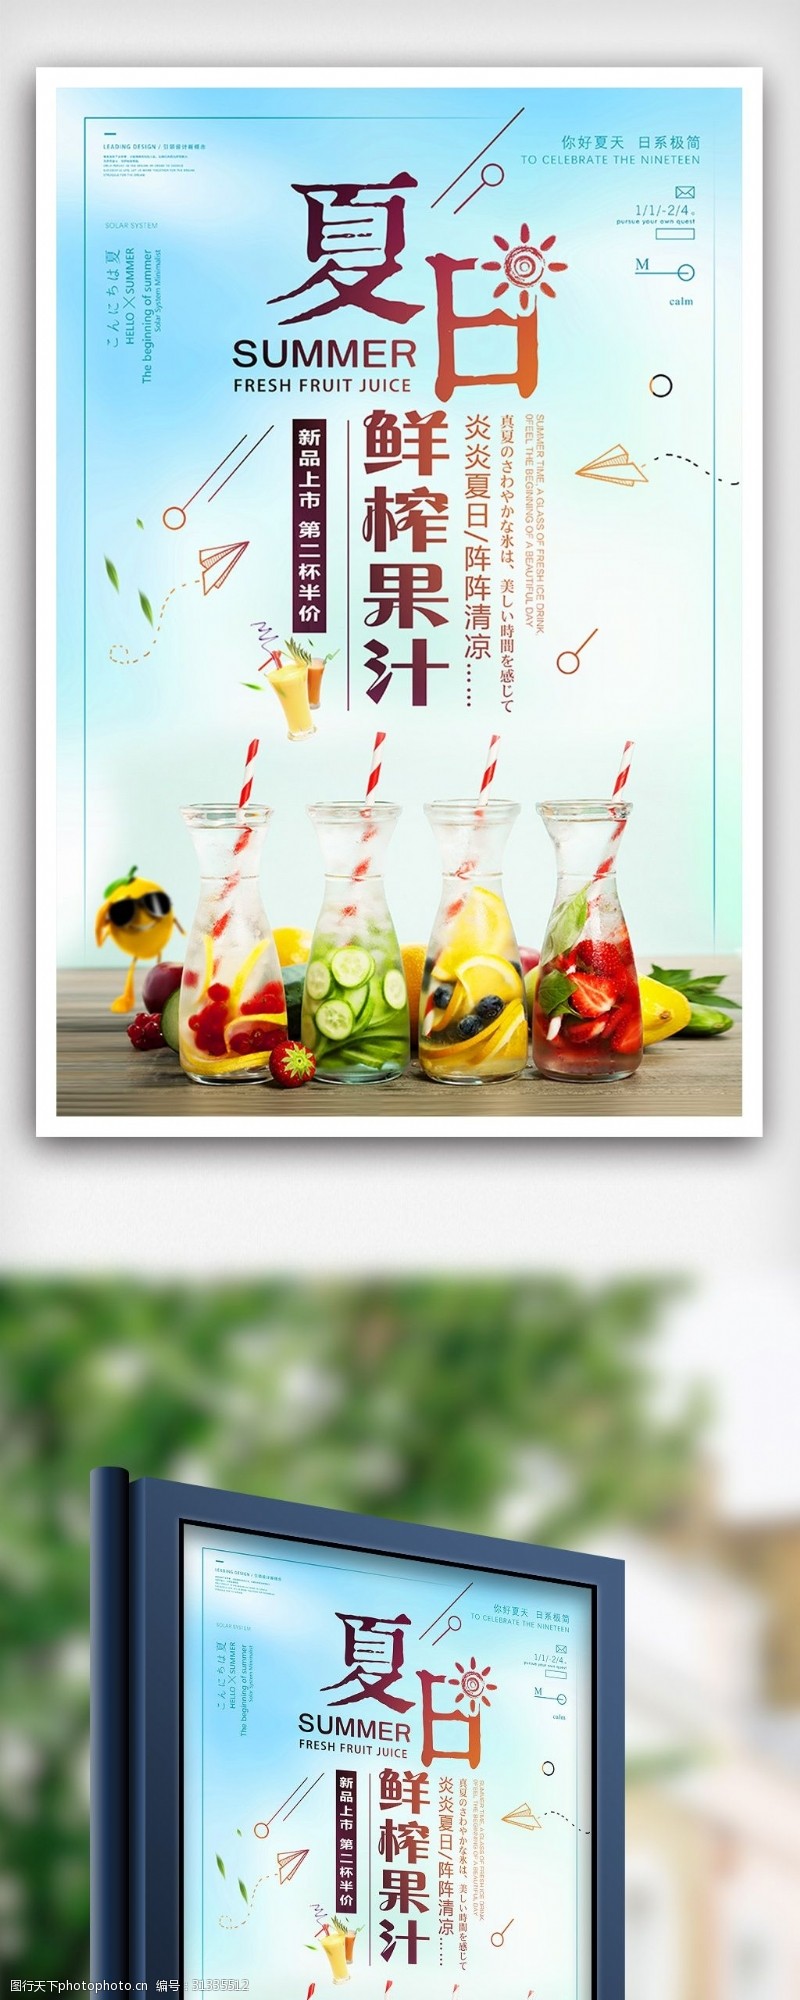 饮料图片免费下载夏日鲜榨果汁夏天水果饮料海报设计